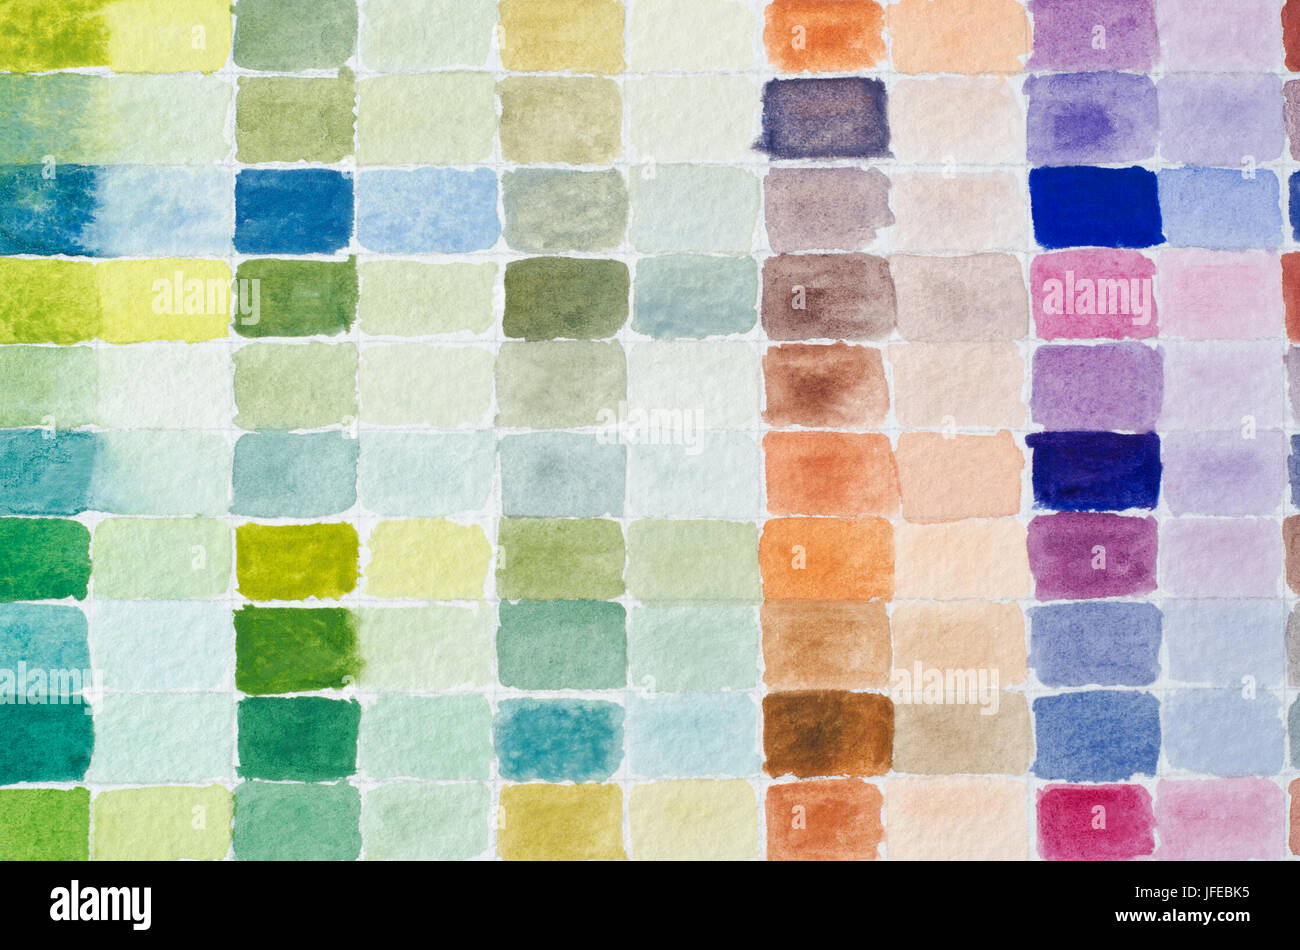 Ein gefülltes Gitter aus Aquarell malen Farben vollen Stärke der Farbe zu vergleichen hat Äquivalent in benachbarten Spalten verdünnt. Stockfoto